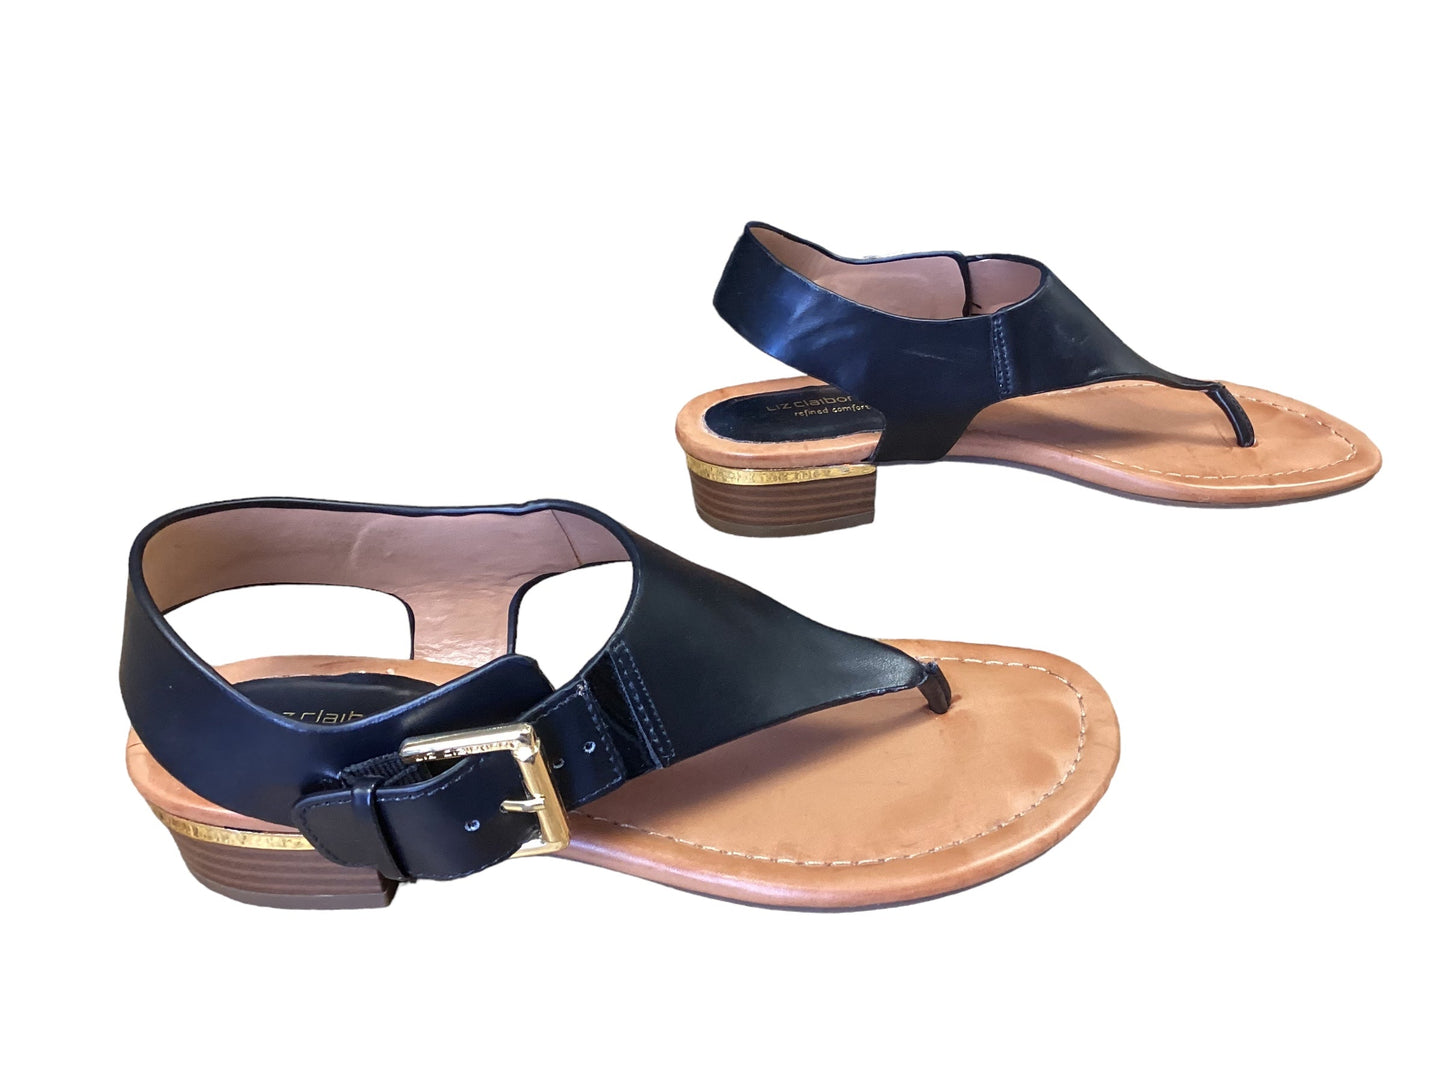 Black Sandals Flats Liz Claiborne, Size 6.5